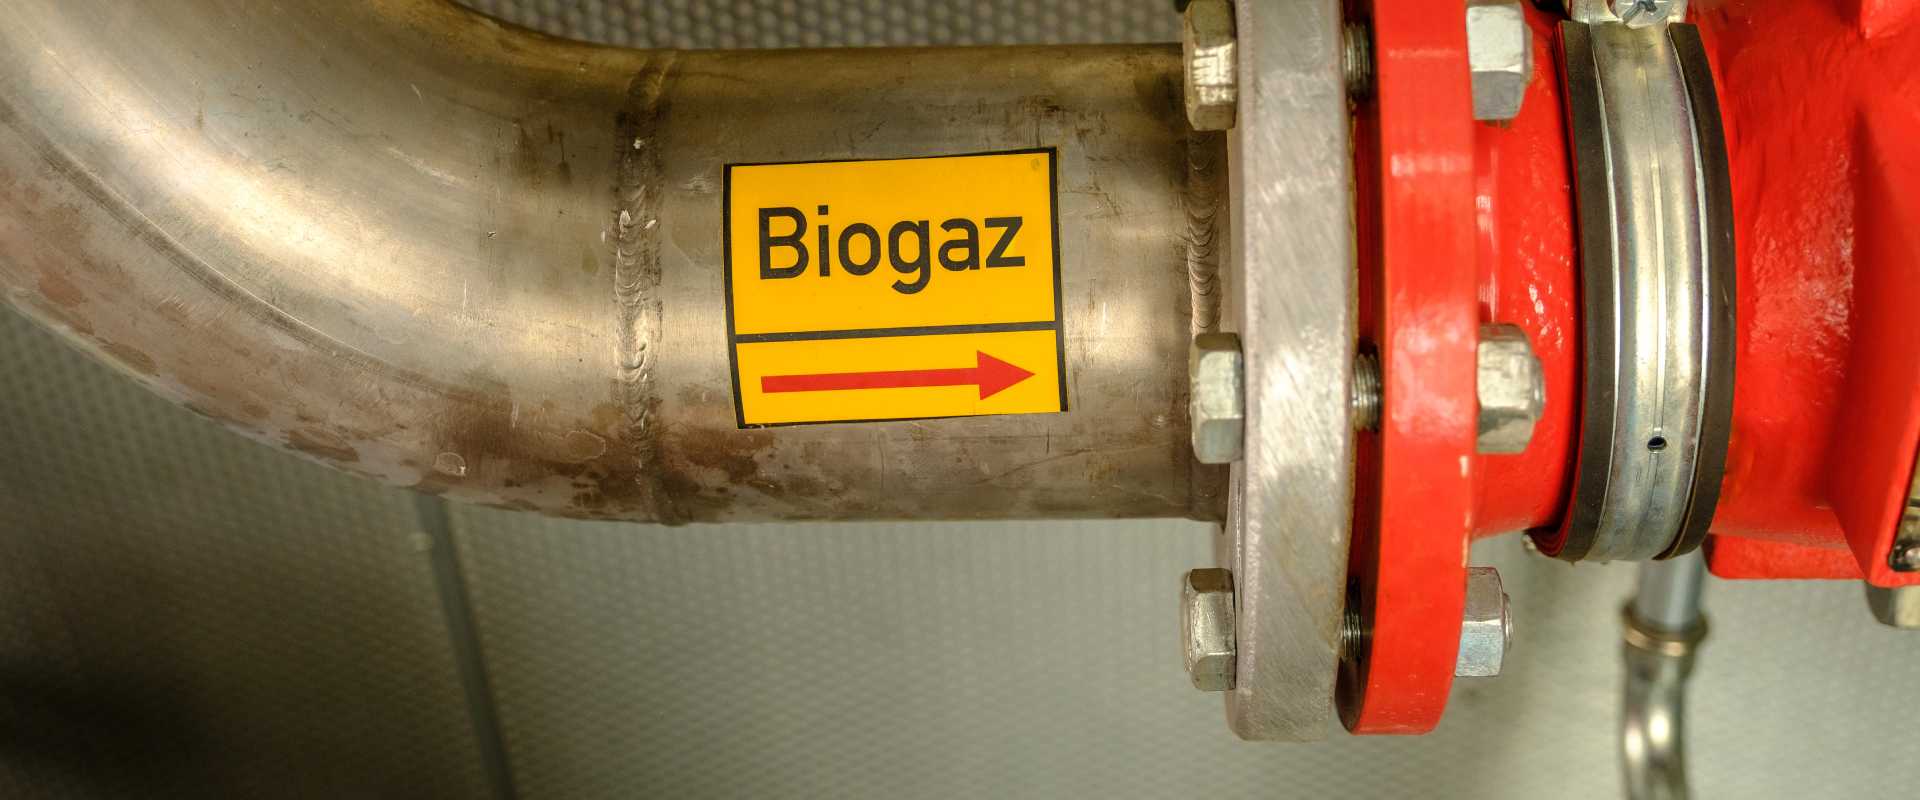 Le biogaz n'encrasse pas les équipements